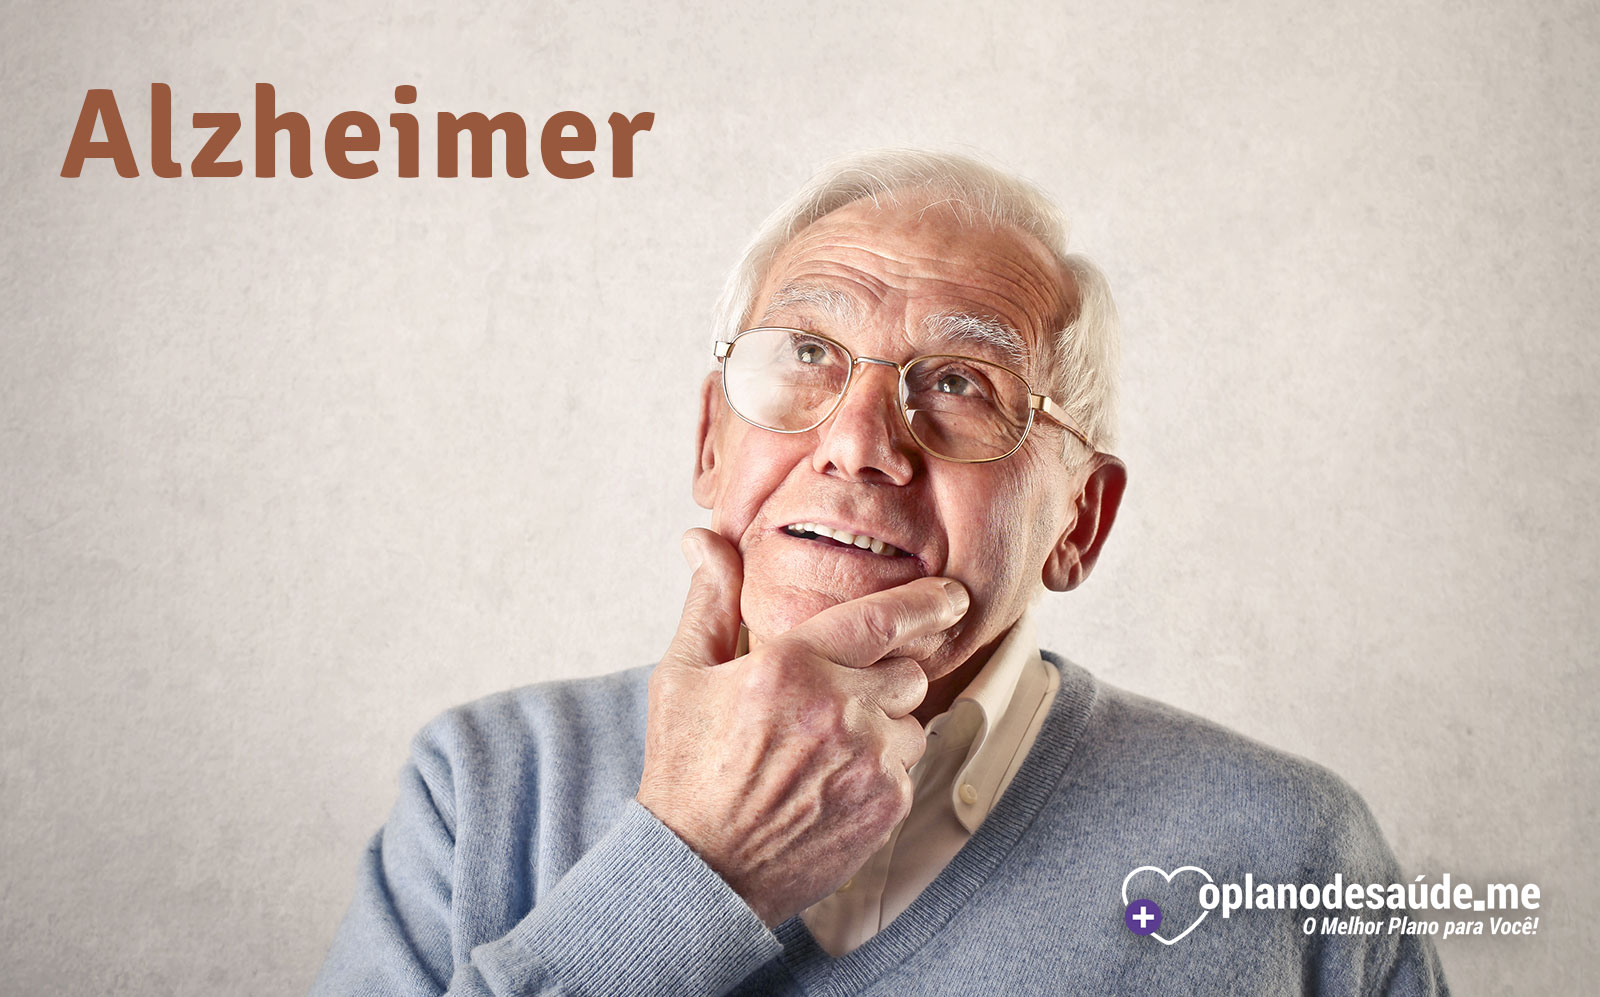 Alzheimer, as 5 coisas que você precisa saber!